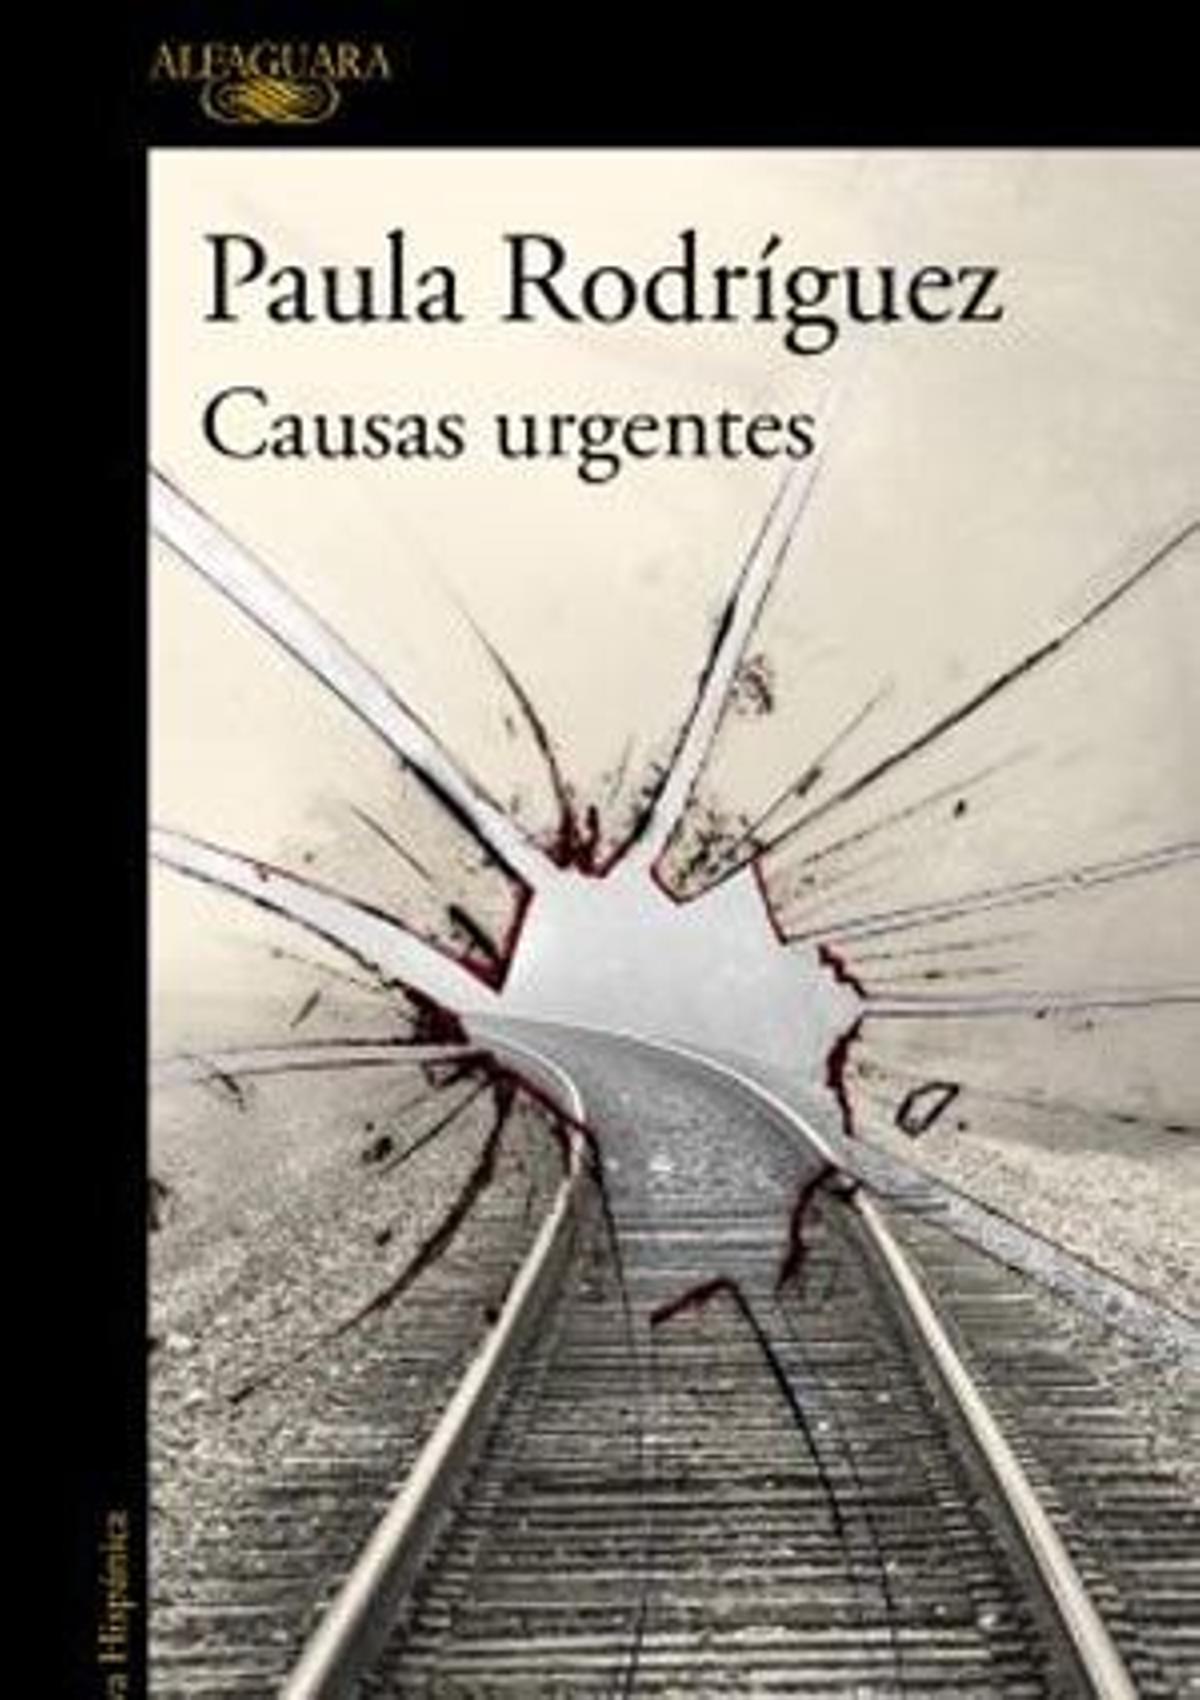 Paula Rodríguez (Alfaguara. 17,90 €).